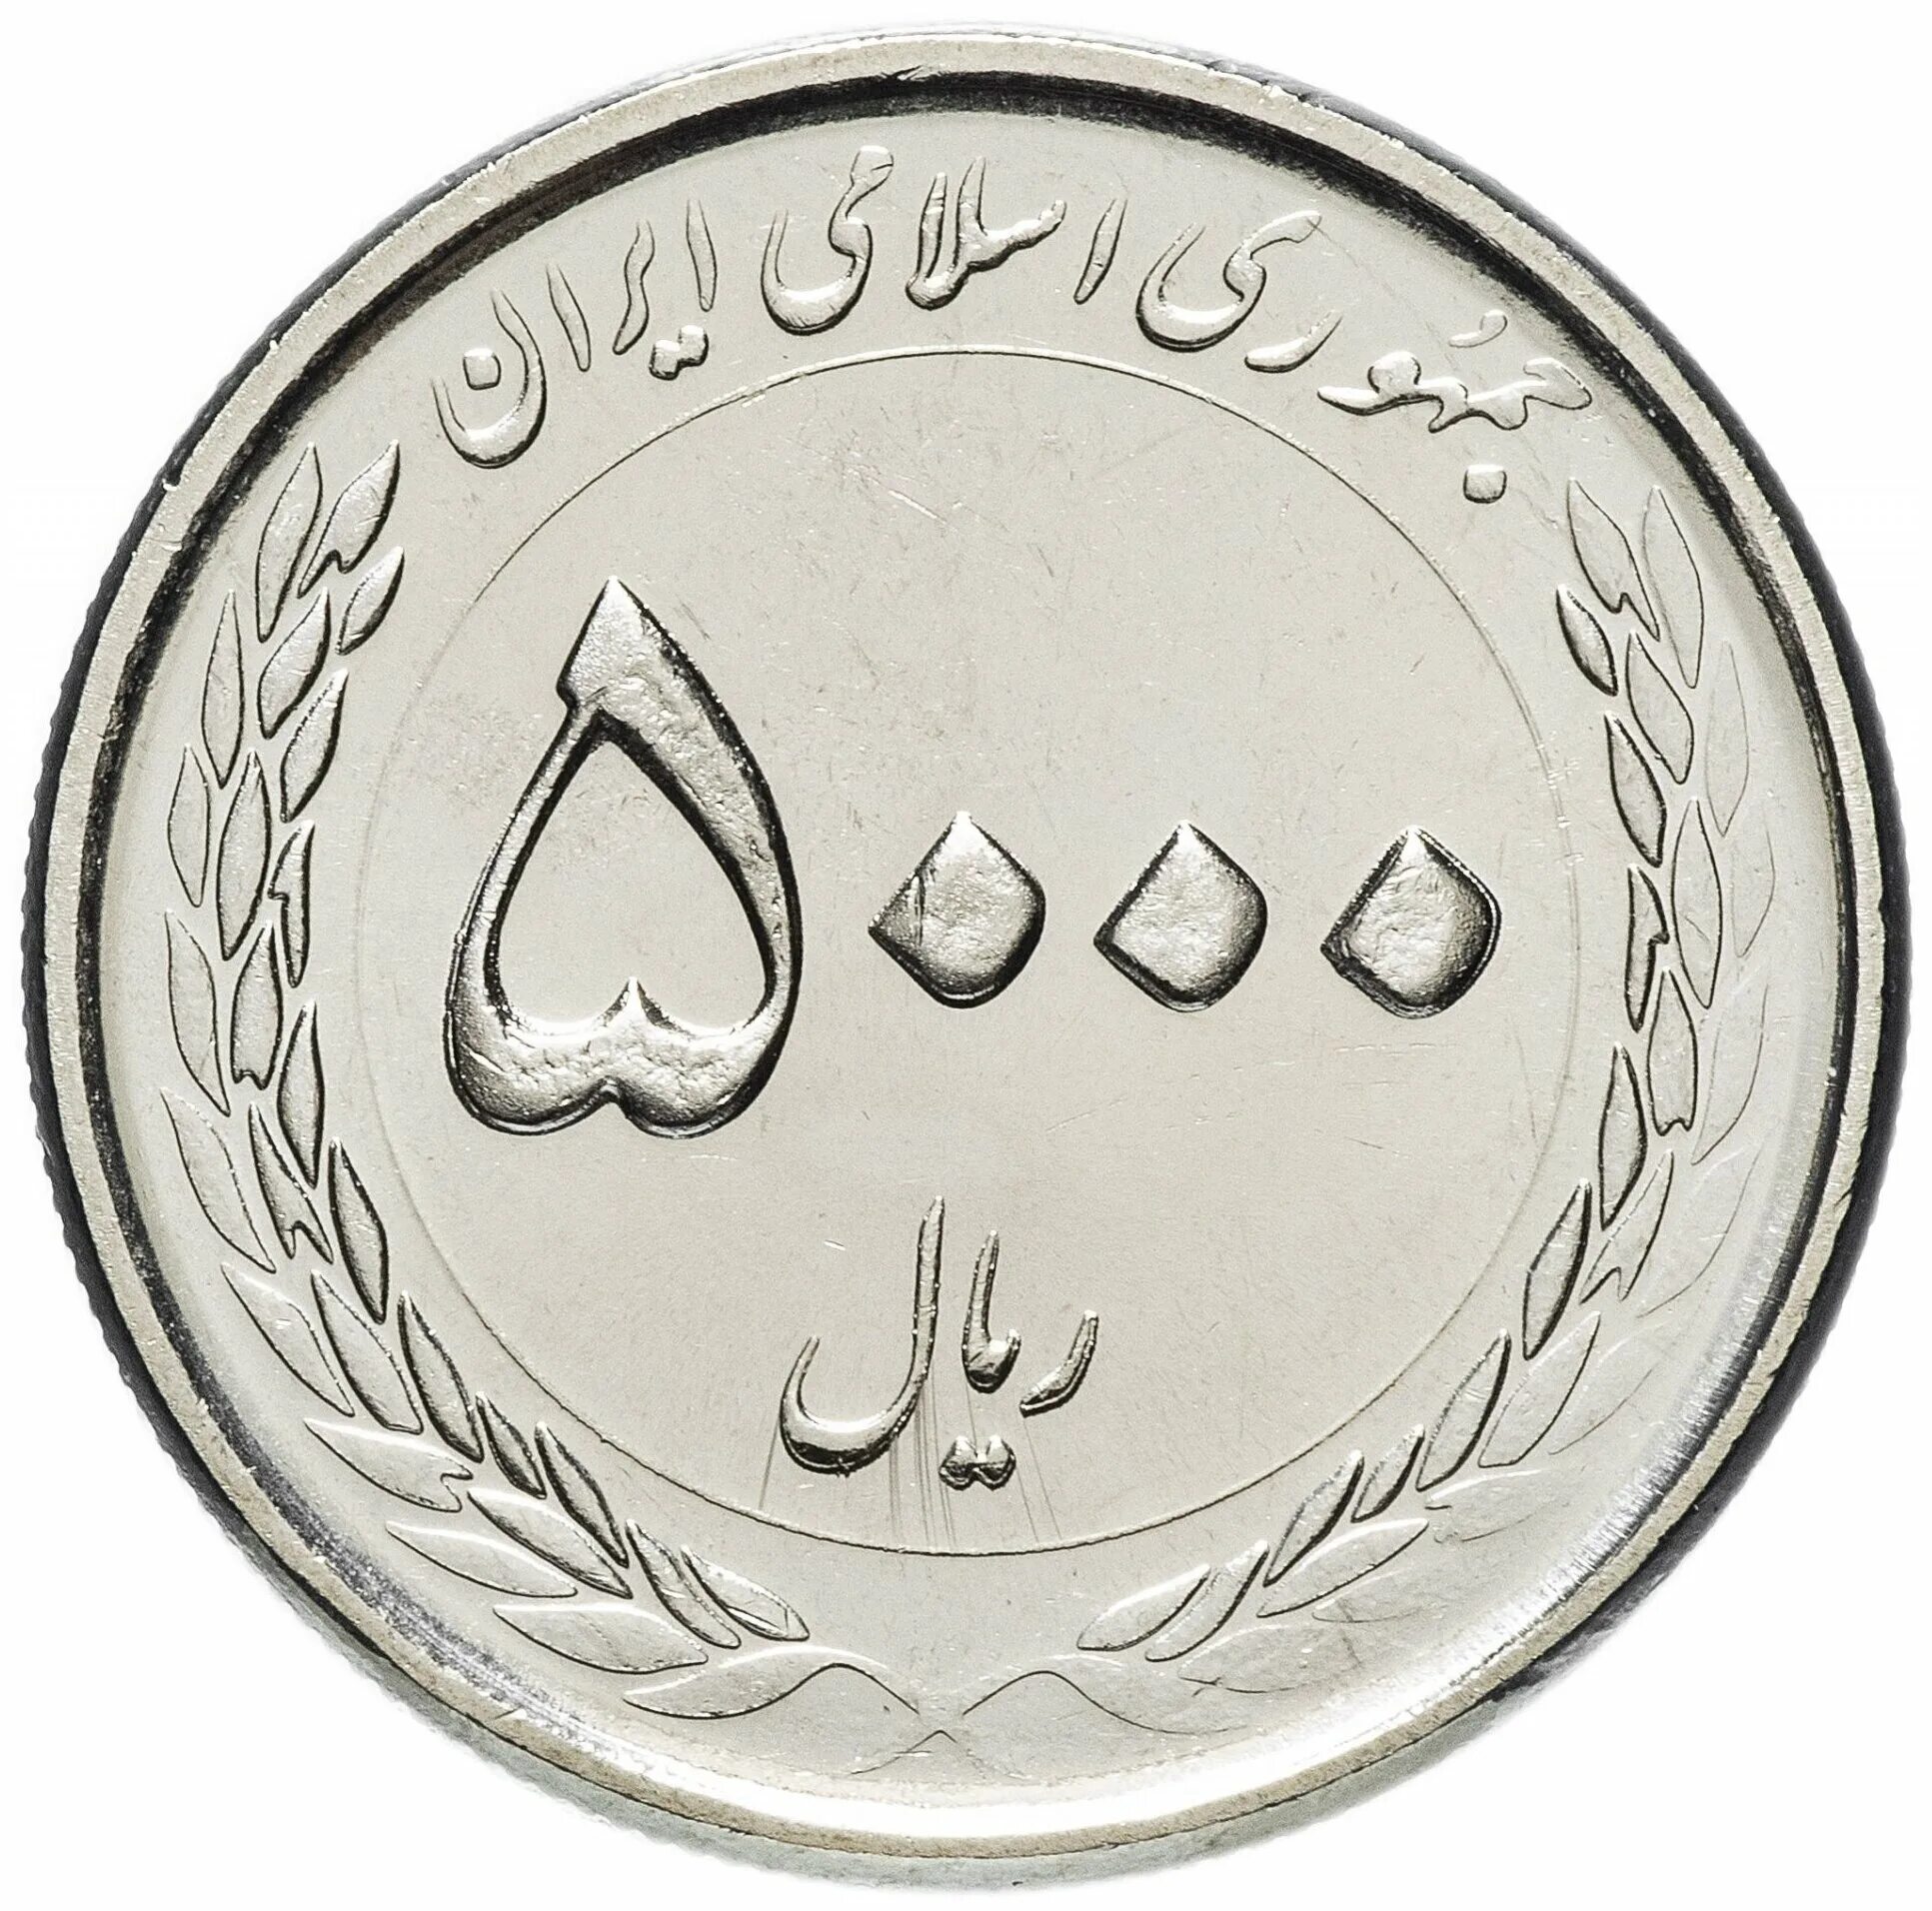 5000 Риалов Иран. Монеты Ирана 5000 риалов. Монеты Ирана Куруш. Иран 5000 риалов 1983.